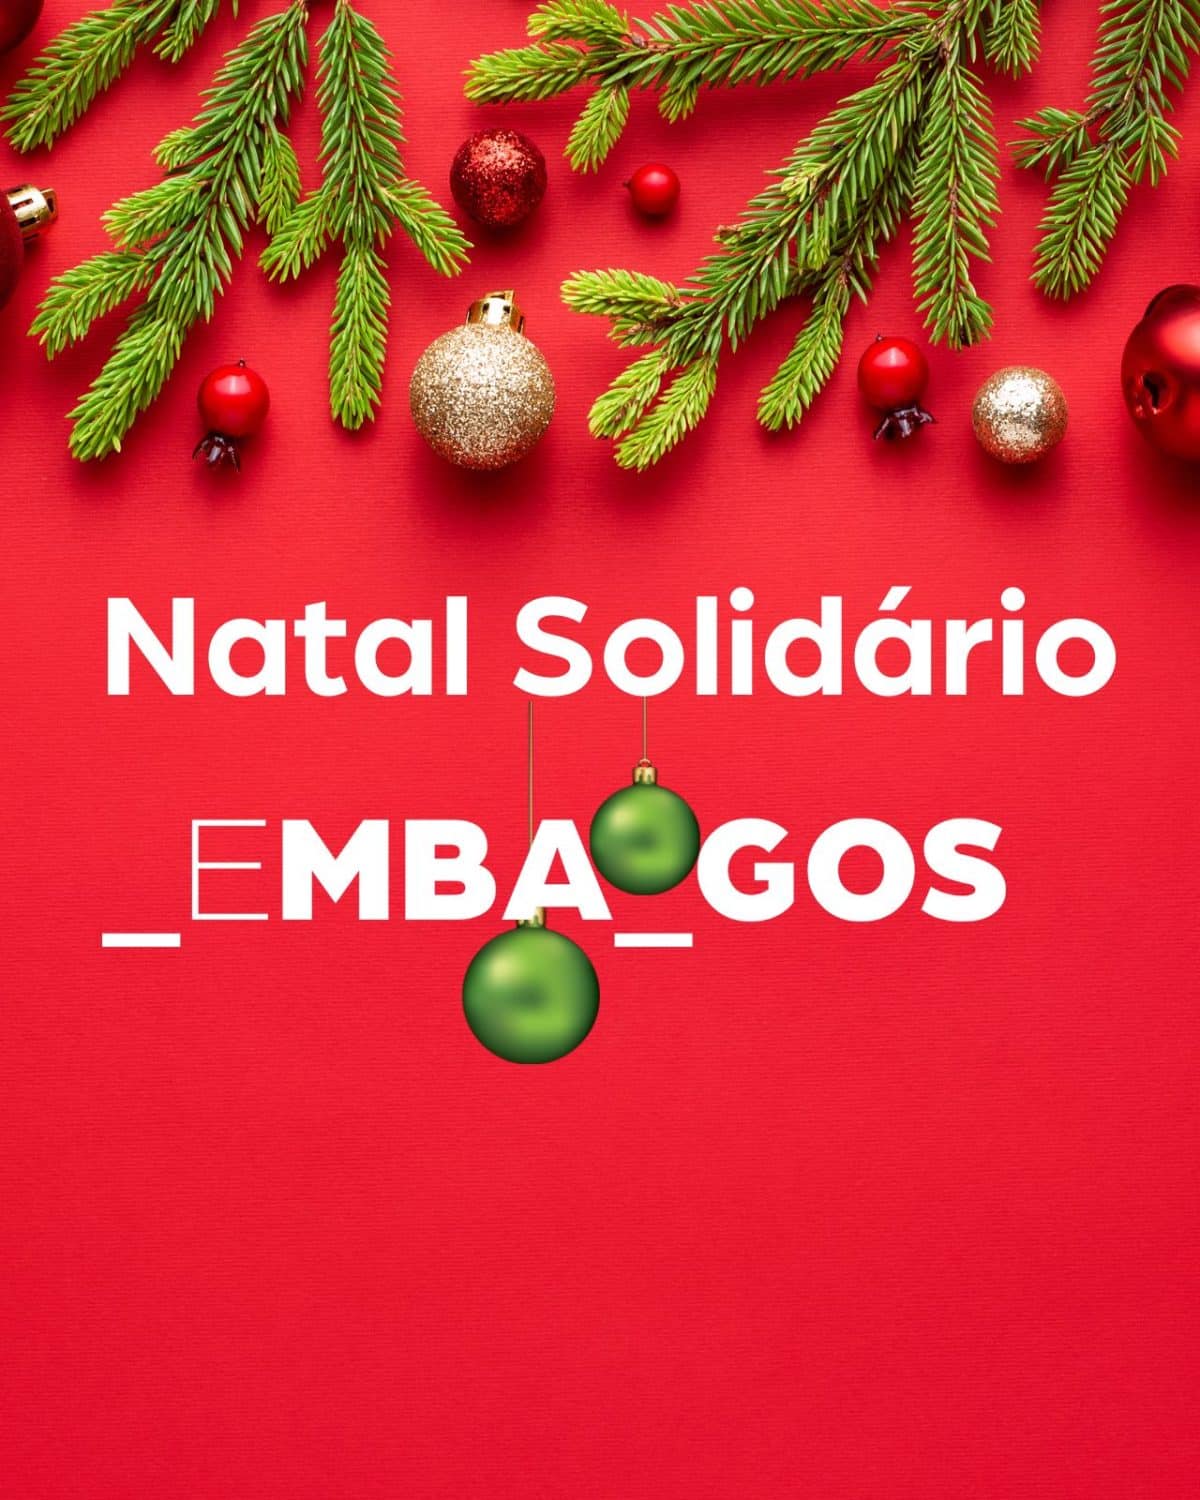 Natal Solidário MBA_GOS - AESE Business School - Formação de Executivos